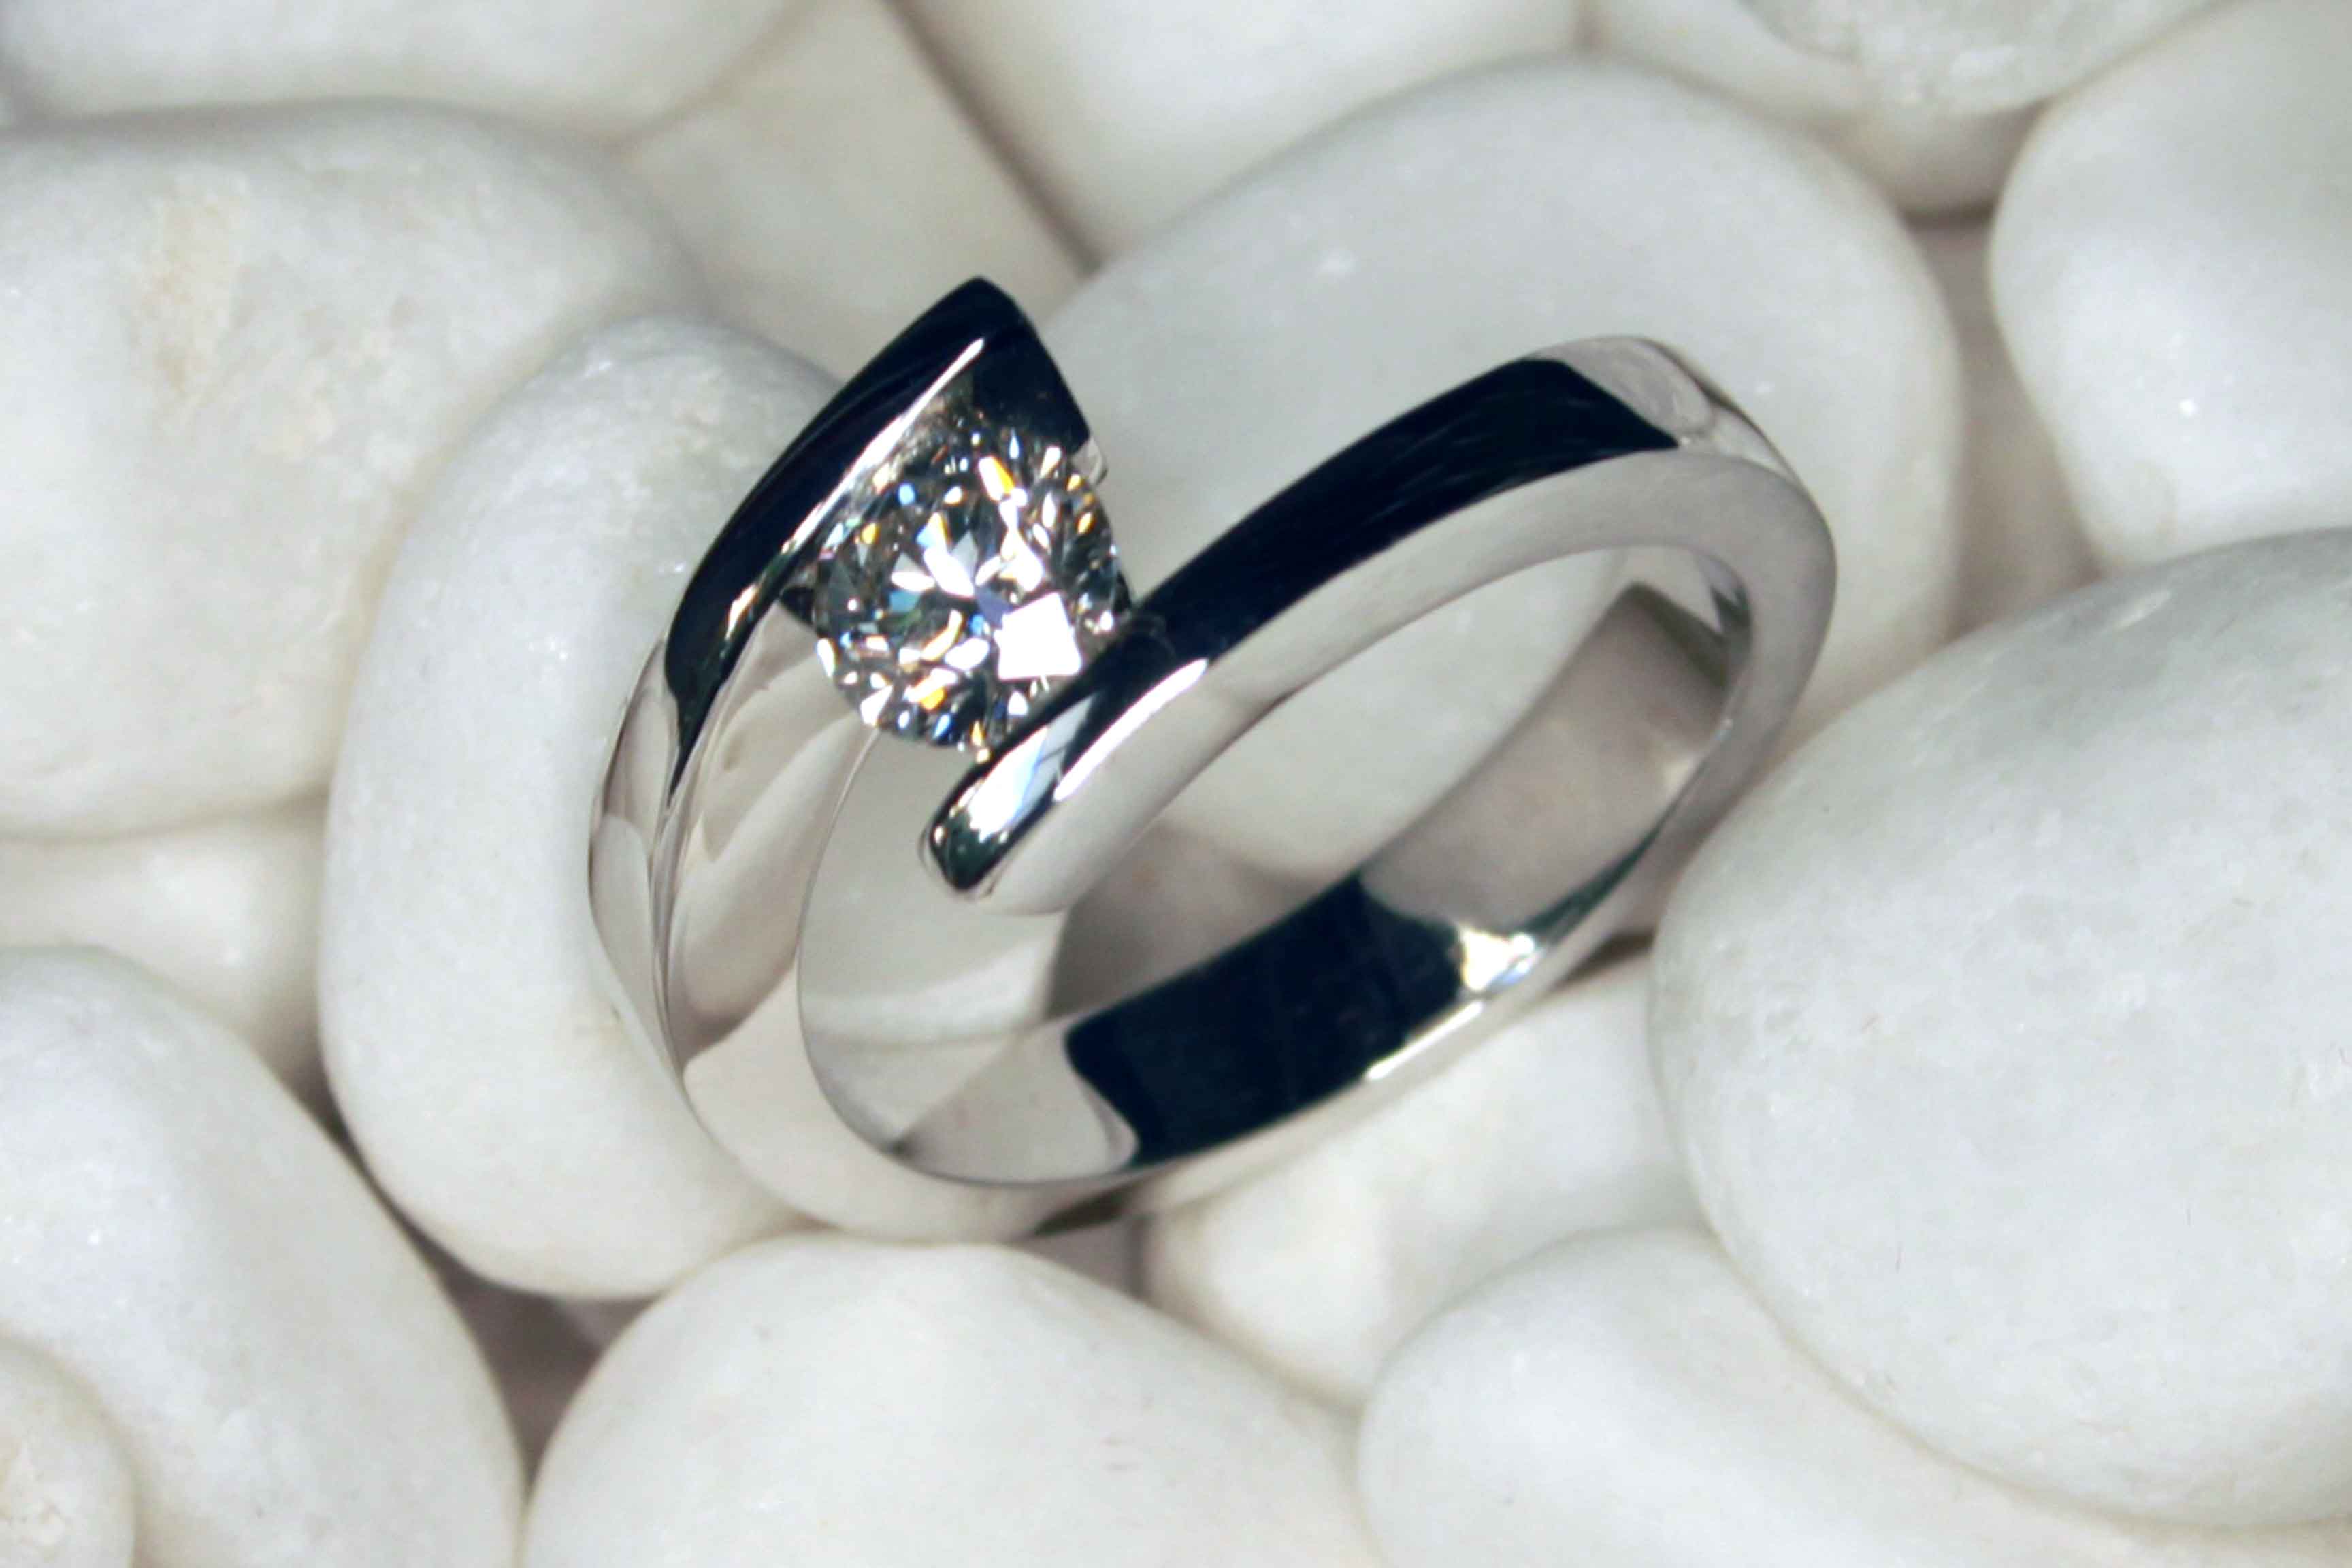 Piedras preciosas para anillos de compromiso ¿cual elegir? - Joyería Oriol